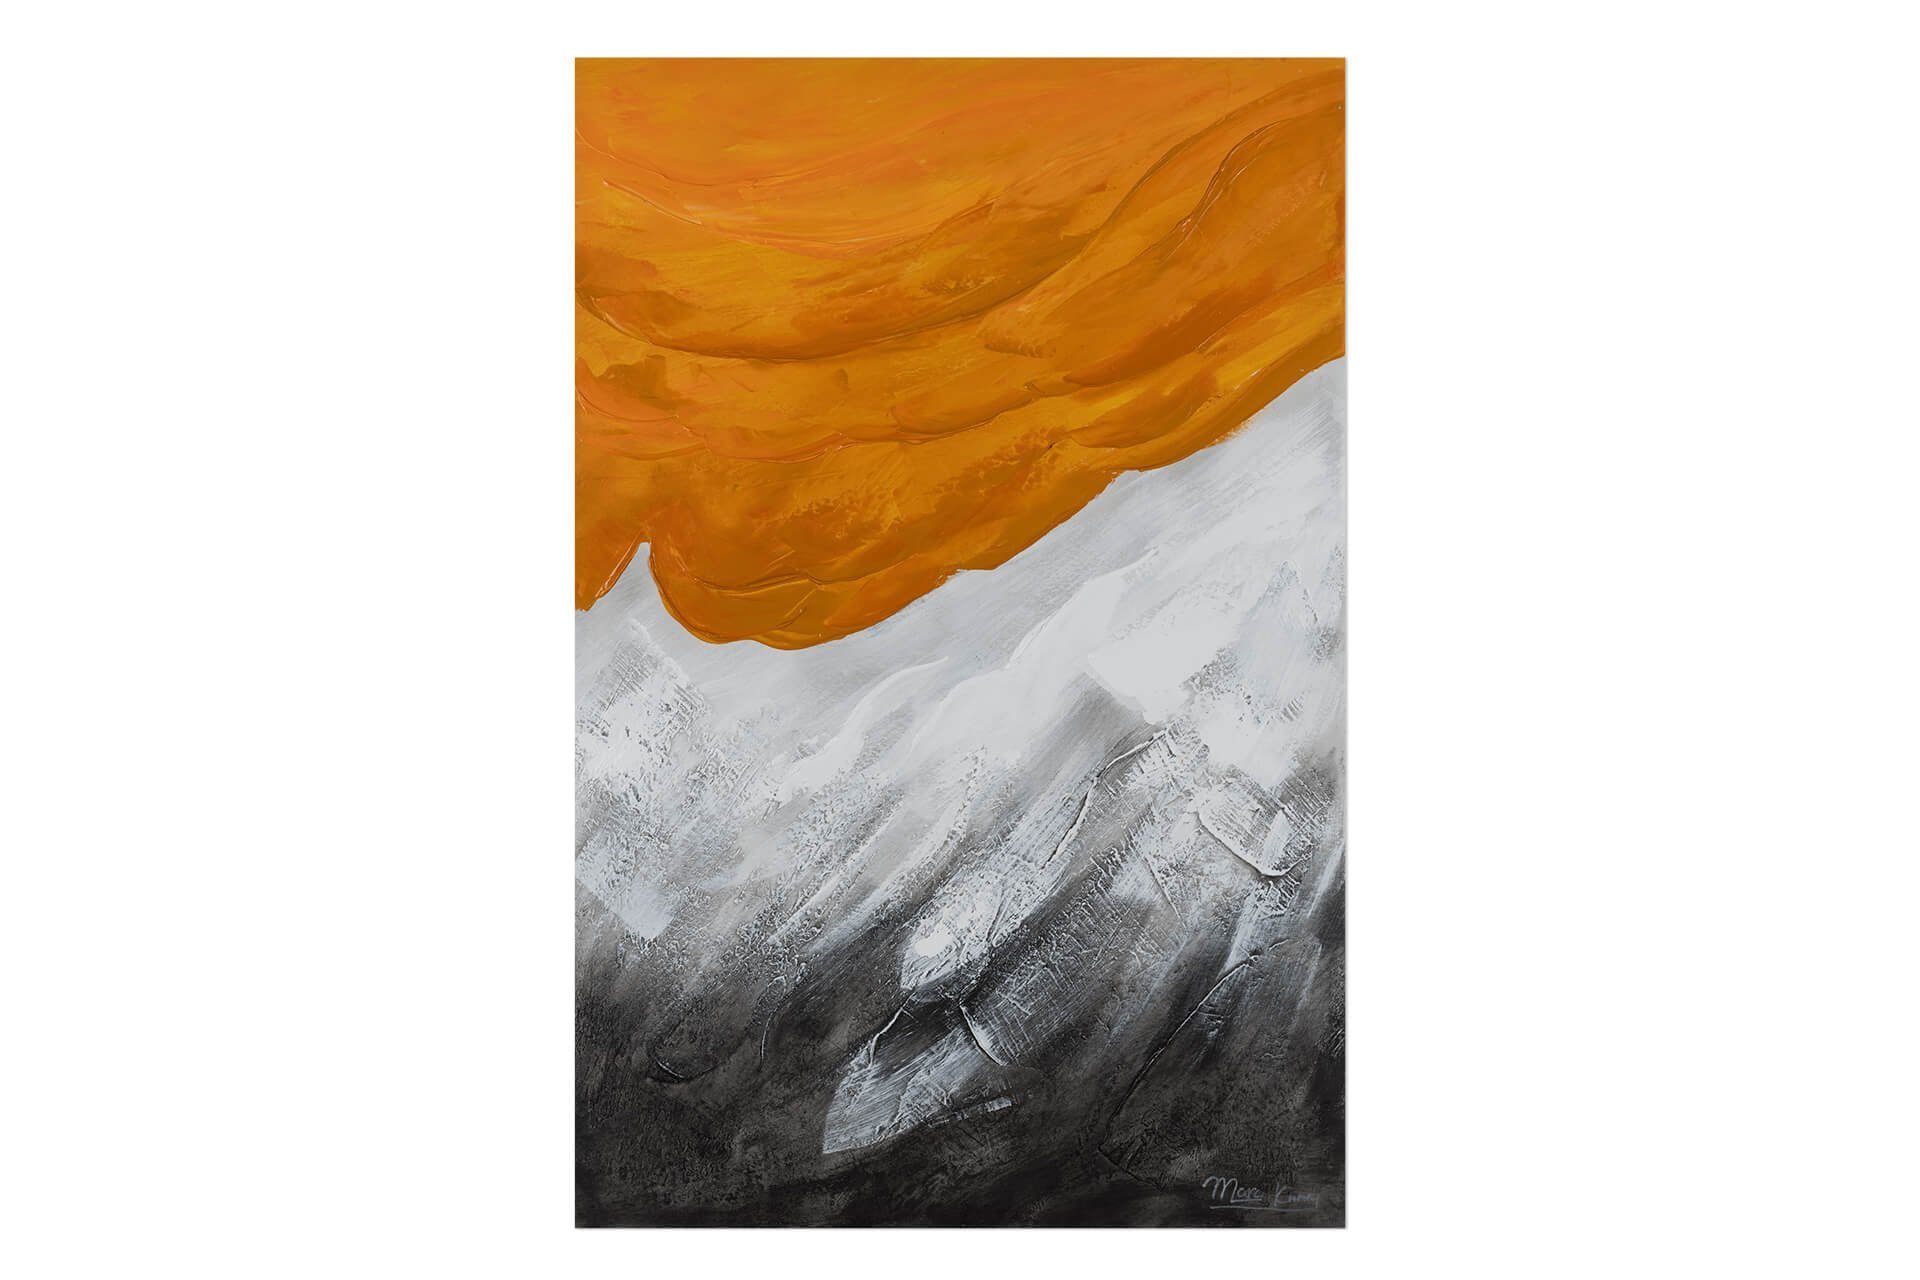 KUNSTLOFT Wohnzimmer Wandbild Leinwandbild Orange cm, 100% HANDGEMALT Gemälde 60x90 Evening